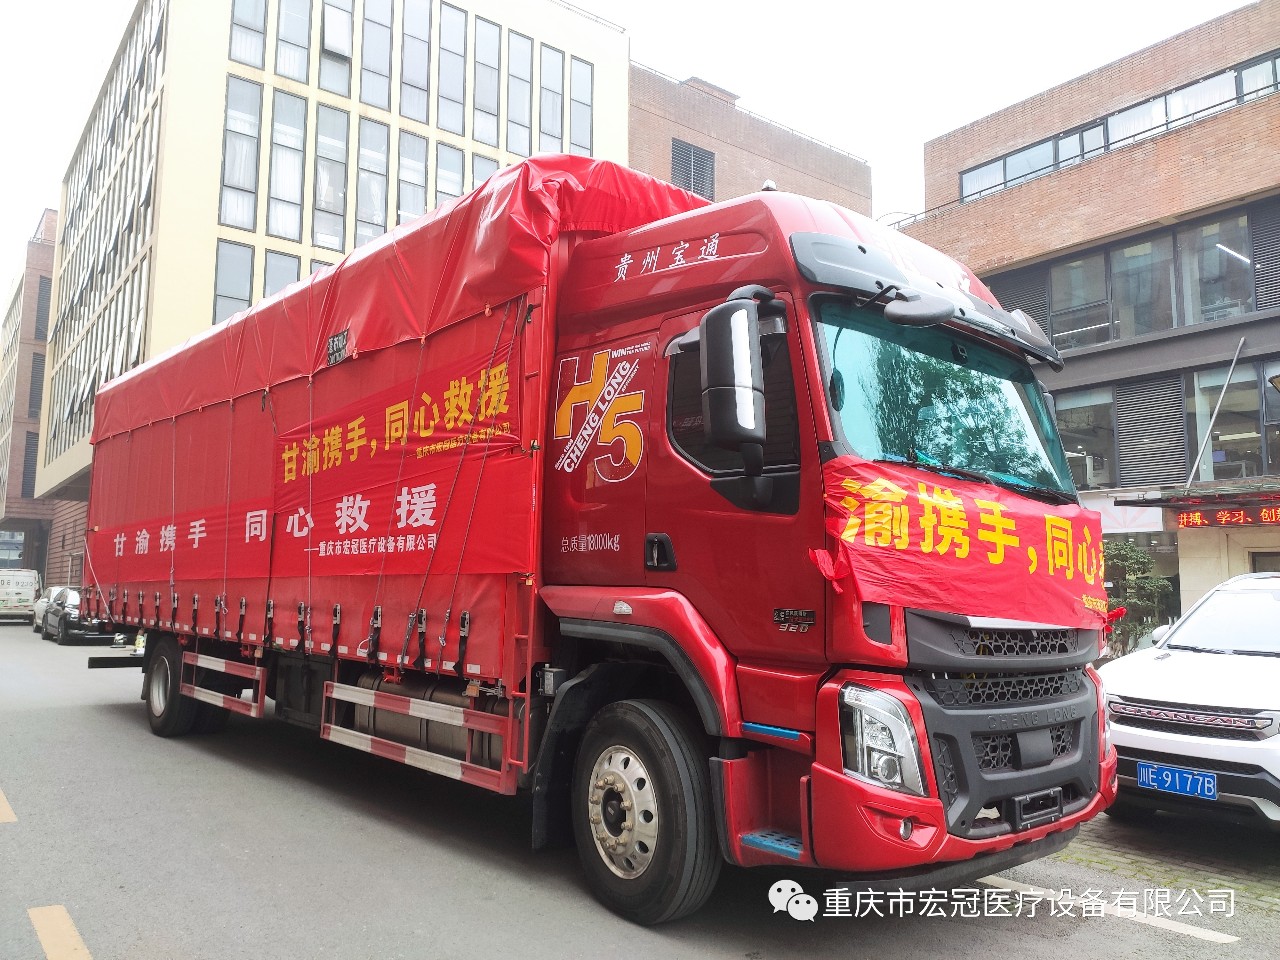 Chongqing Hongguan Medical Equipment Co., Ltd. kompaniyasi Gansudagi ofat hududlarini qo‘llab-quvvatlash uchun 700 ming yuandan ortiq tibbiy buyumlarni xayriya qildi.